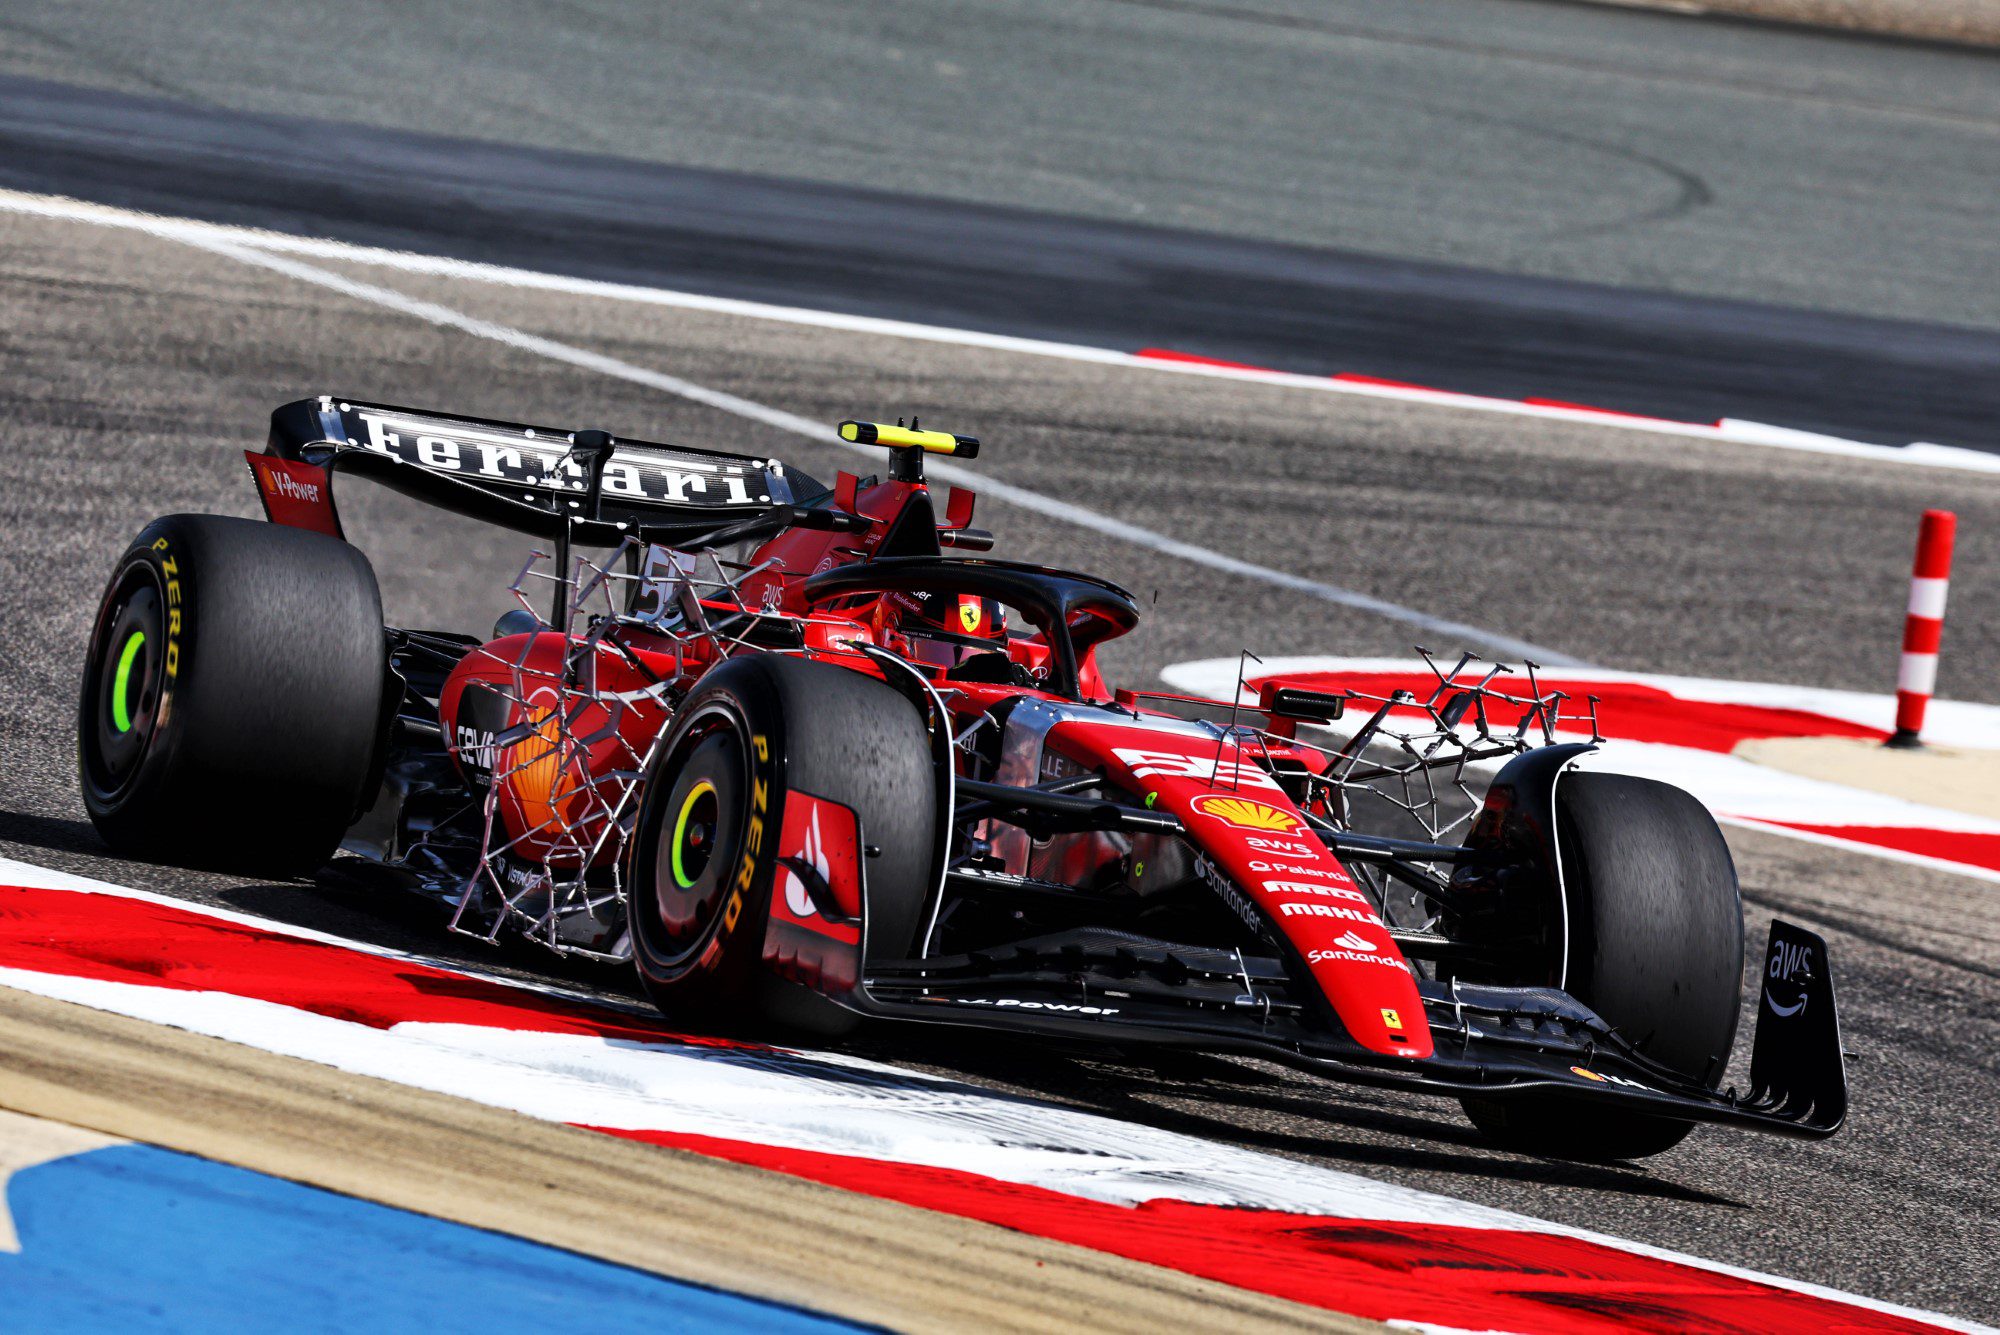 F1: Ferrari planeja apresentar novo carro em 13 de fevereiro no Circuito de Fiorano